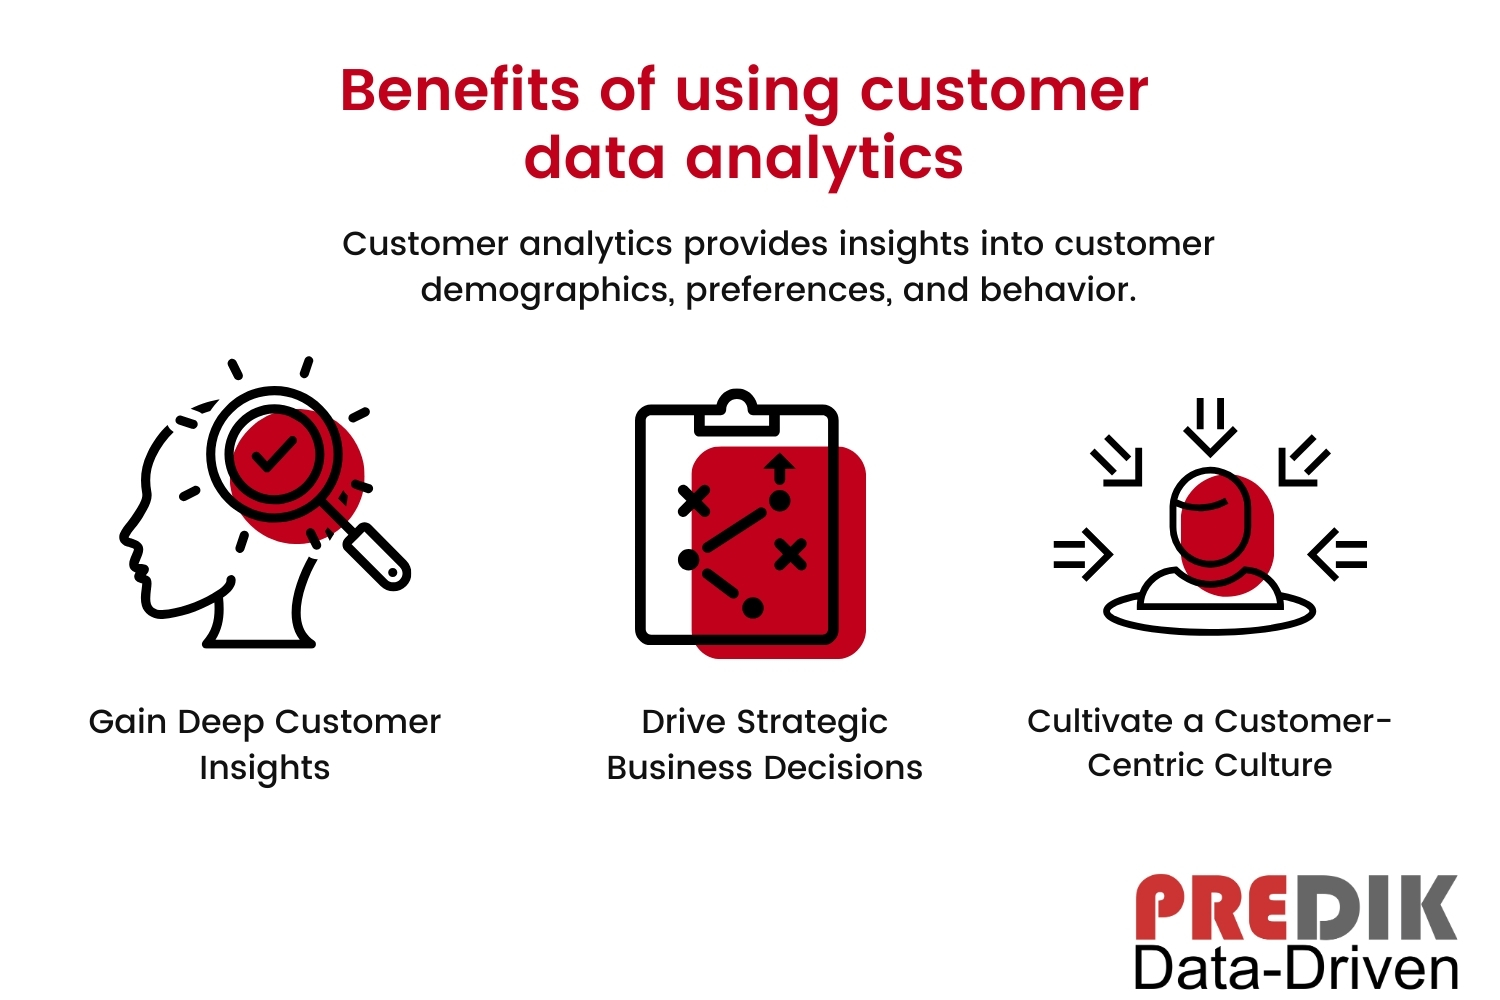 Image explaining the benefits of using customer data analytics